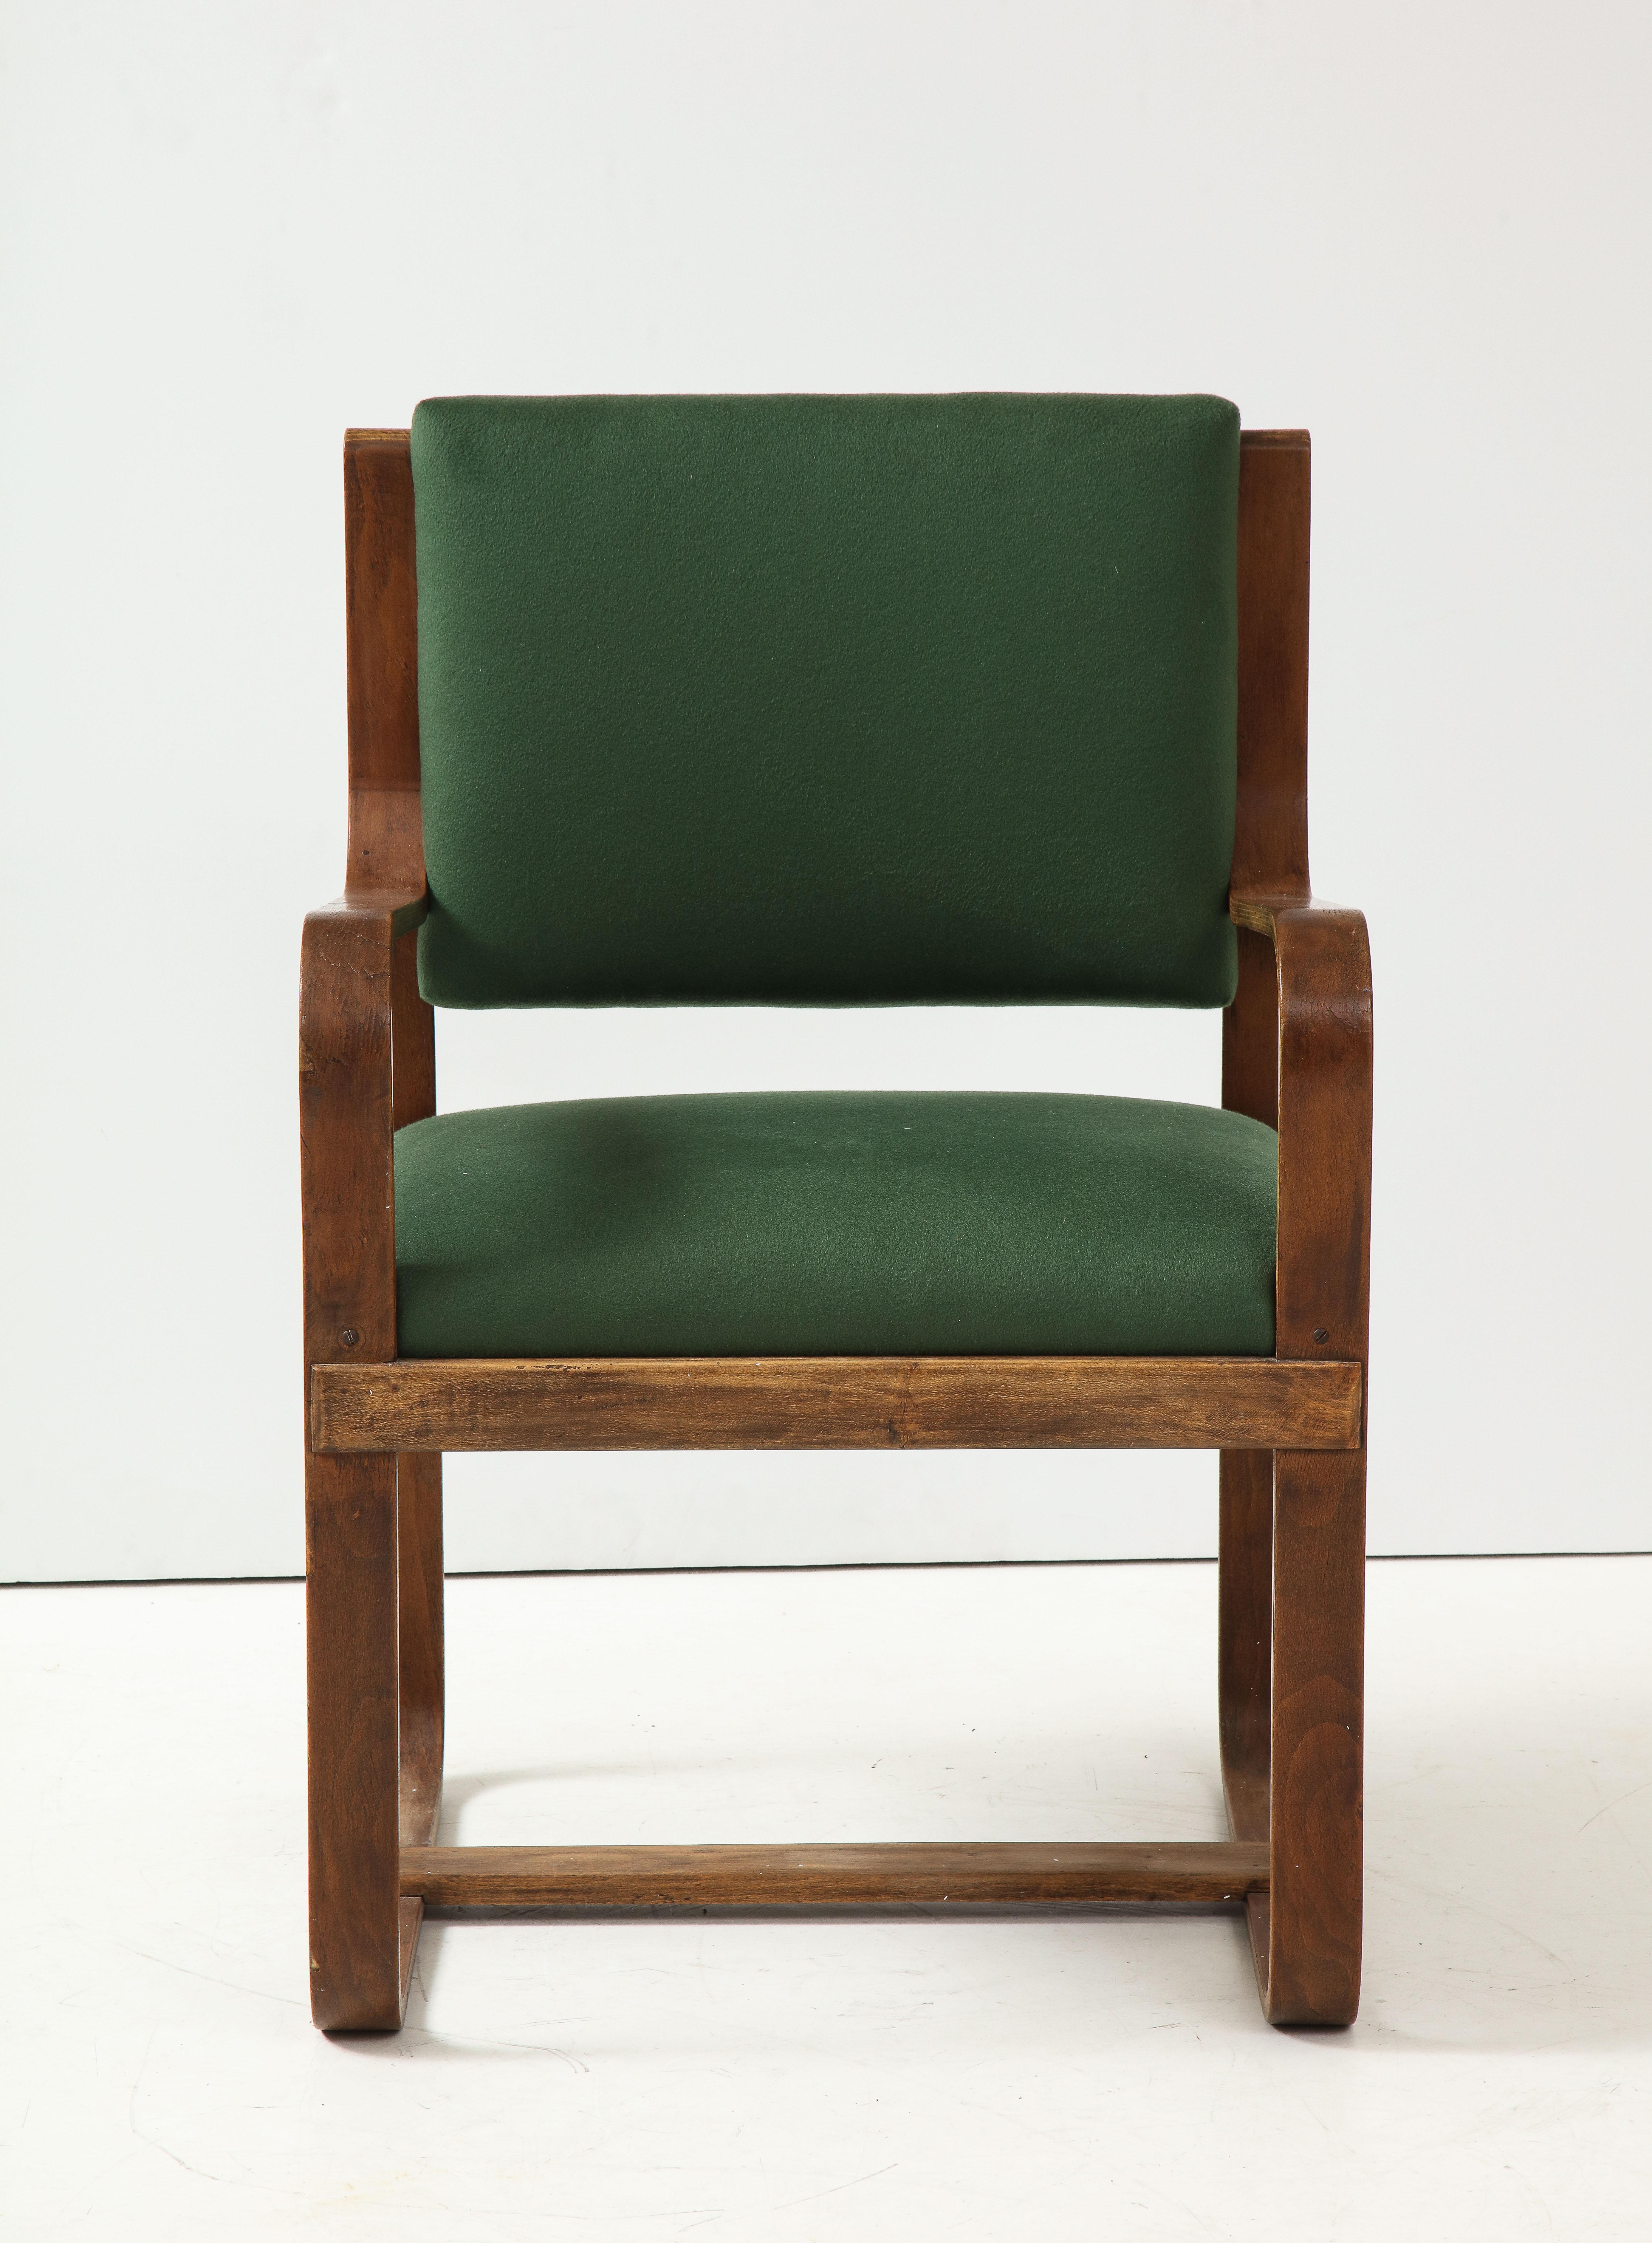 Fauteuil en bois stratifié incurvé de Giuseppe Pagano, Italie, vers les années 1940. 

Ce superbe fauteuil a été conçu à l'origine pour l'université Bocconi de Milan par l'architecte, le designer de meubles et le rédacteur en chef de longue date